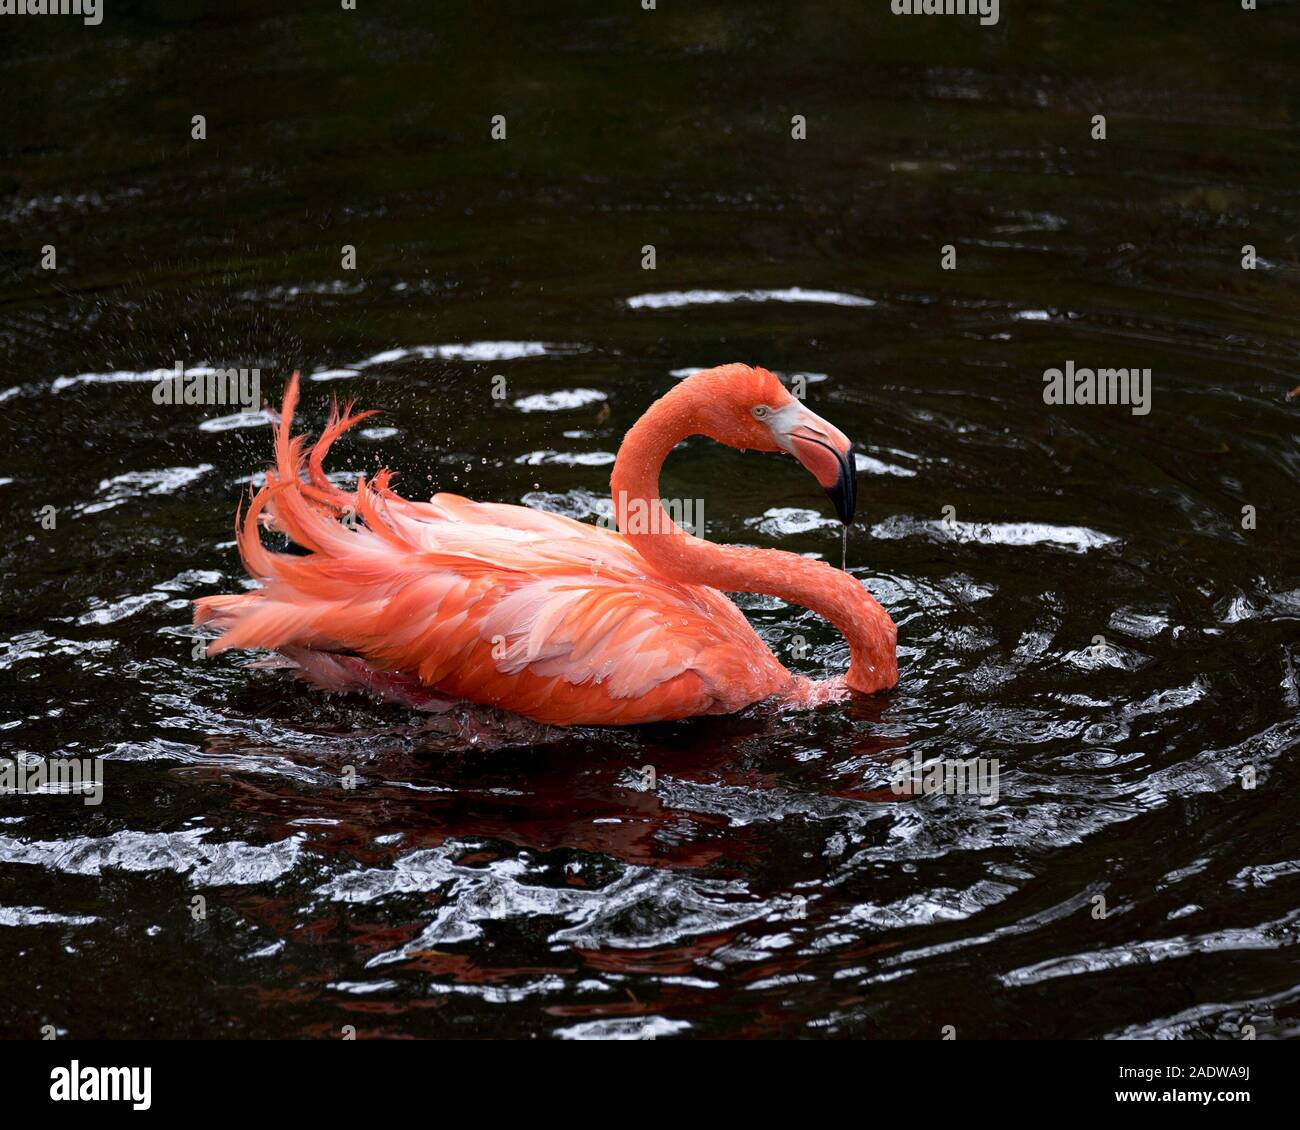 Flamingo bird close-up visualizza profilo visualizzando il suo bellissimo piumaggio, Testa, lunga neg, becco, occhio nei dintorni con fondo di acqua. Foto Stock